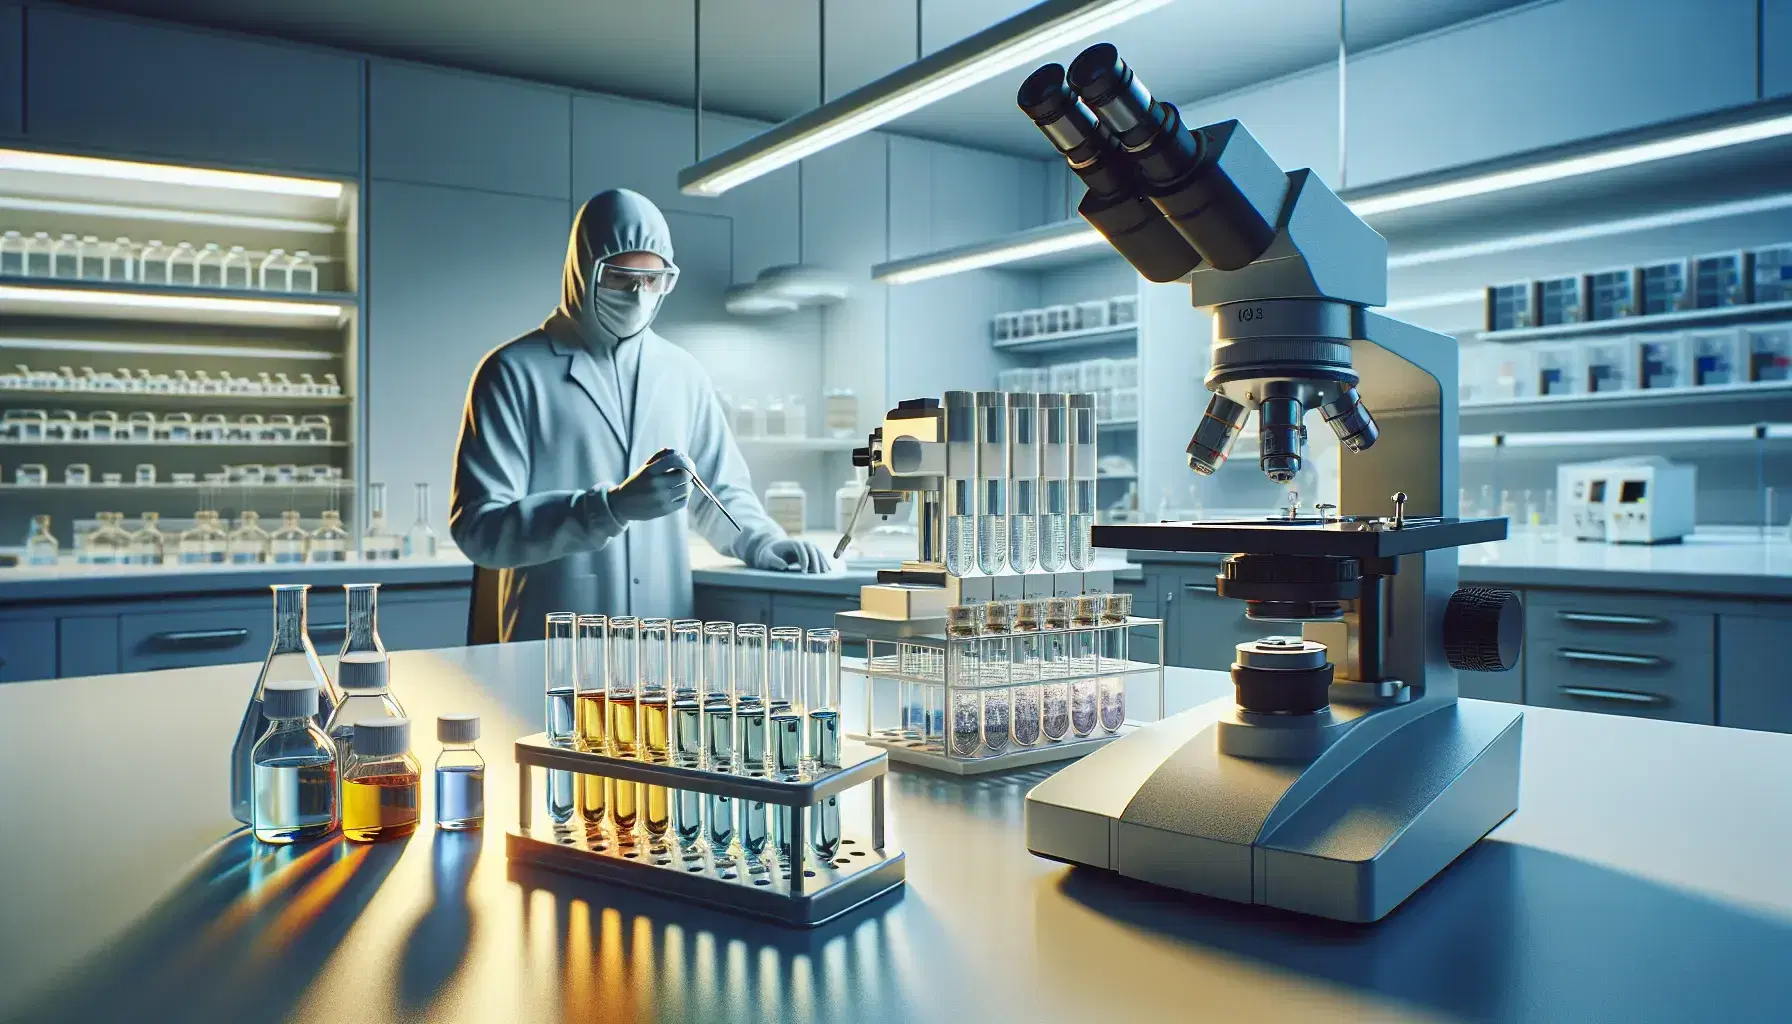 Laboratorio clínico moderno con tubos de ensayo de colores, microscopio electrónico y técnico utilizando pipeta, reflejando profesionalismo y concentración.